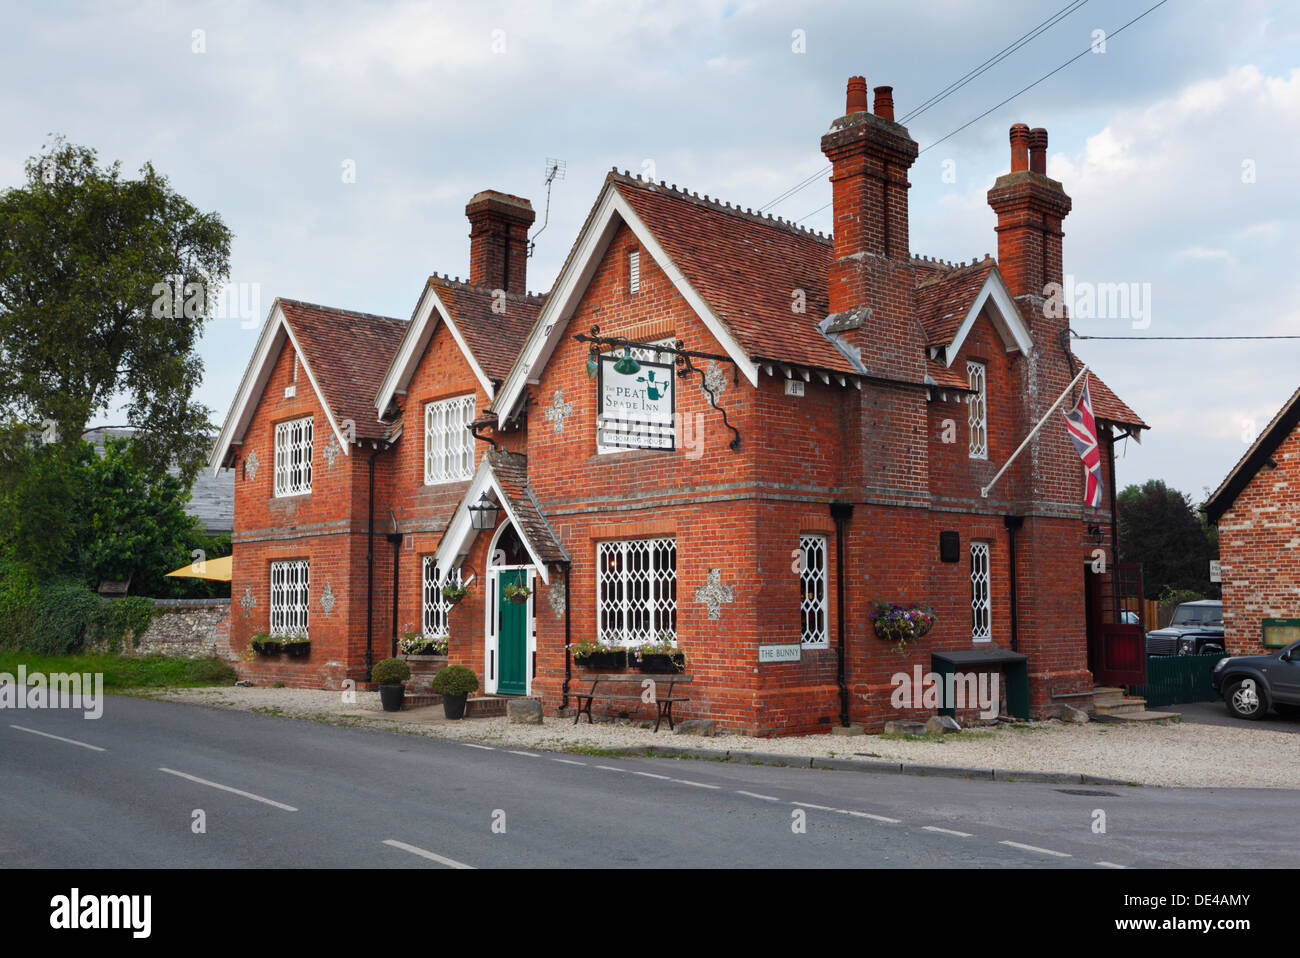 La turba y la pala Inn at Longstock. Hampshire. Inglaterra. En el Reino Unido. Foto de stock